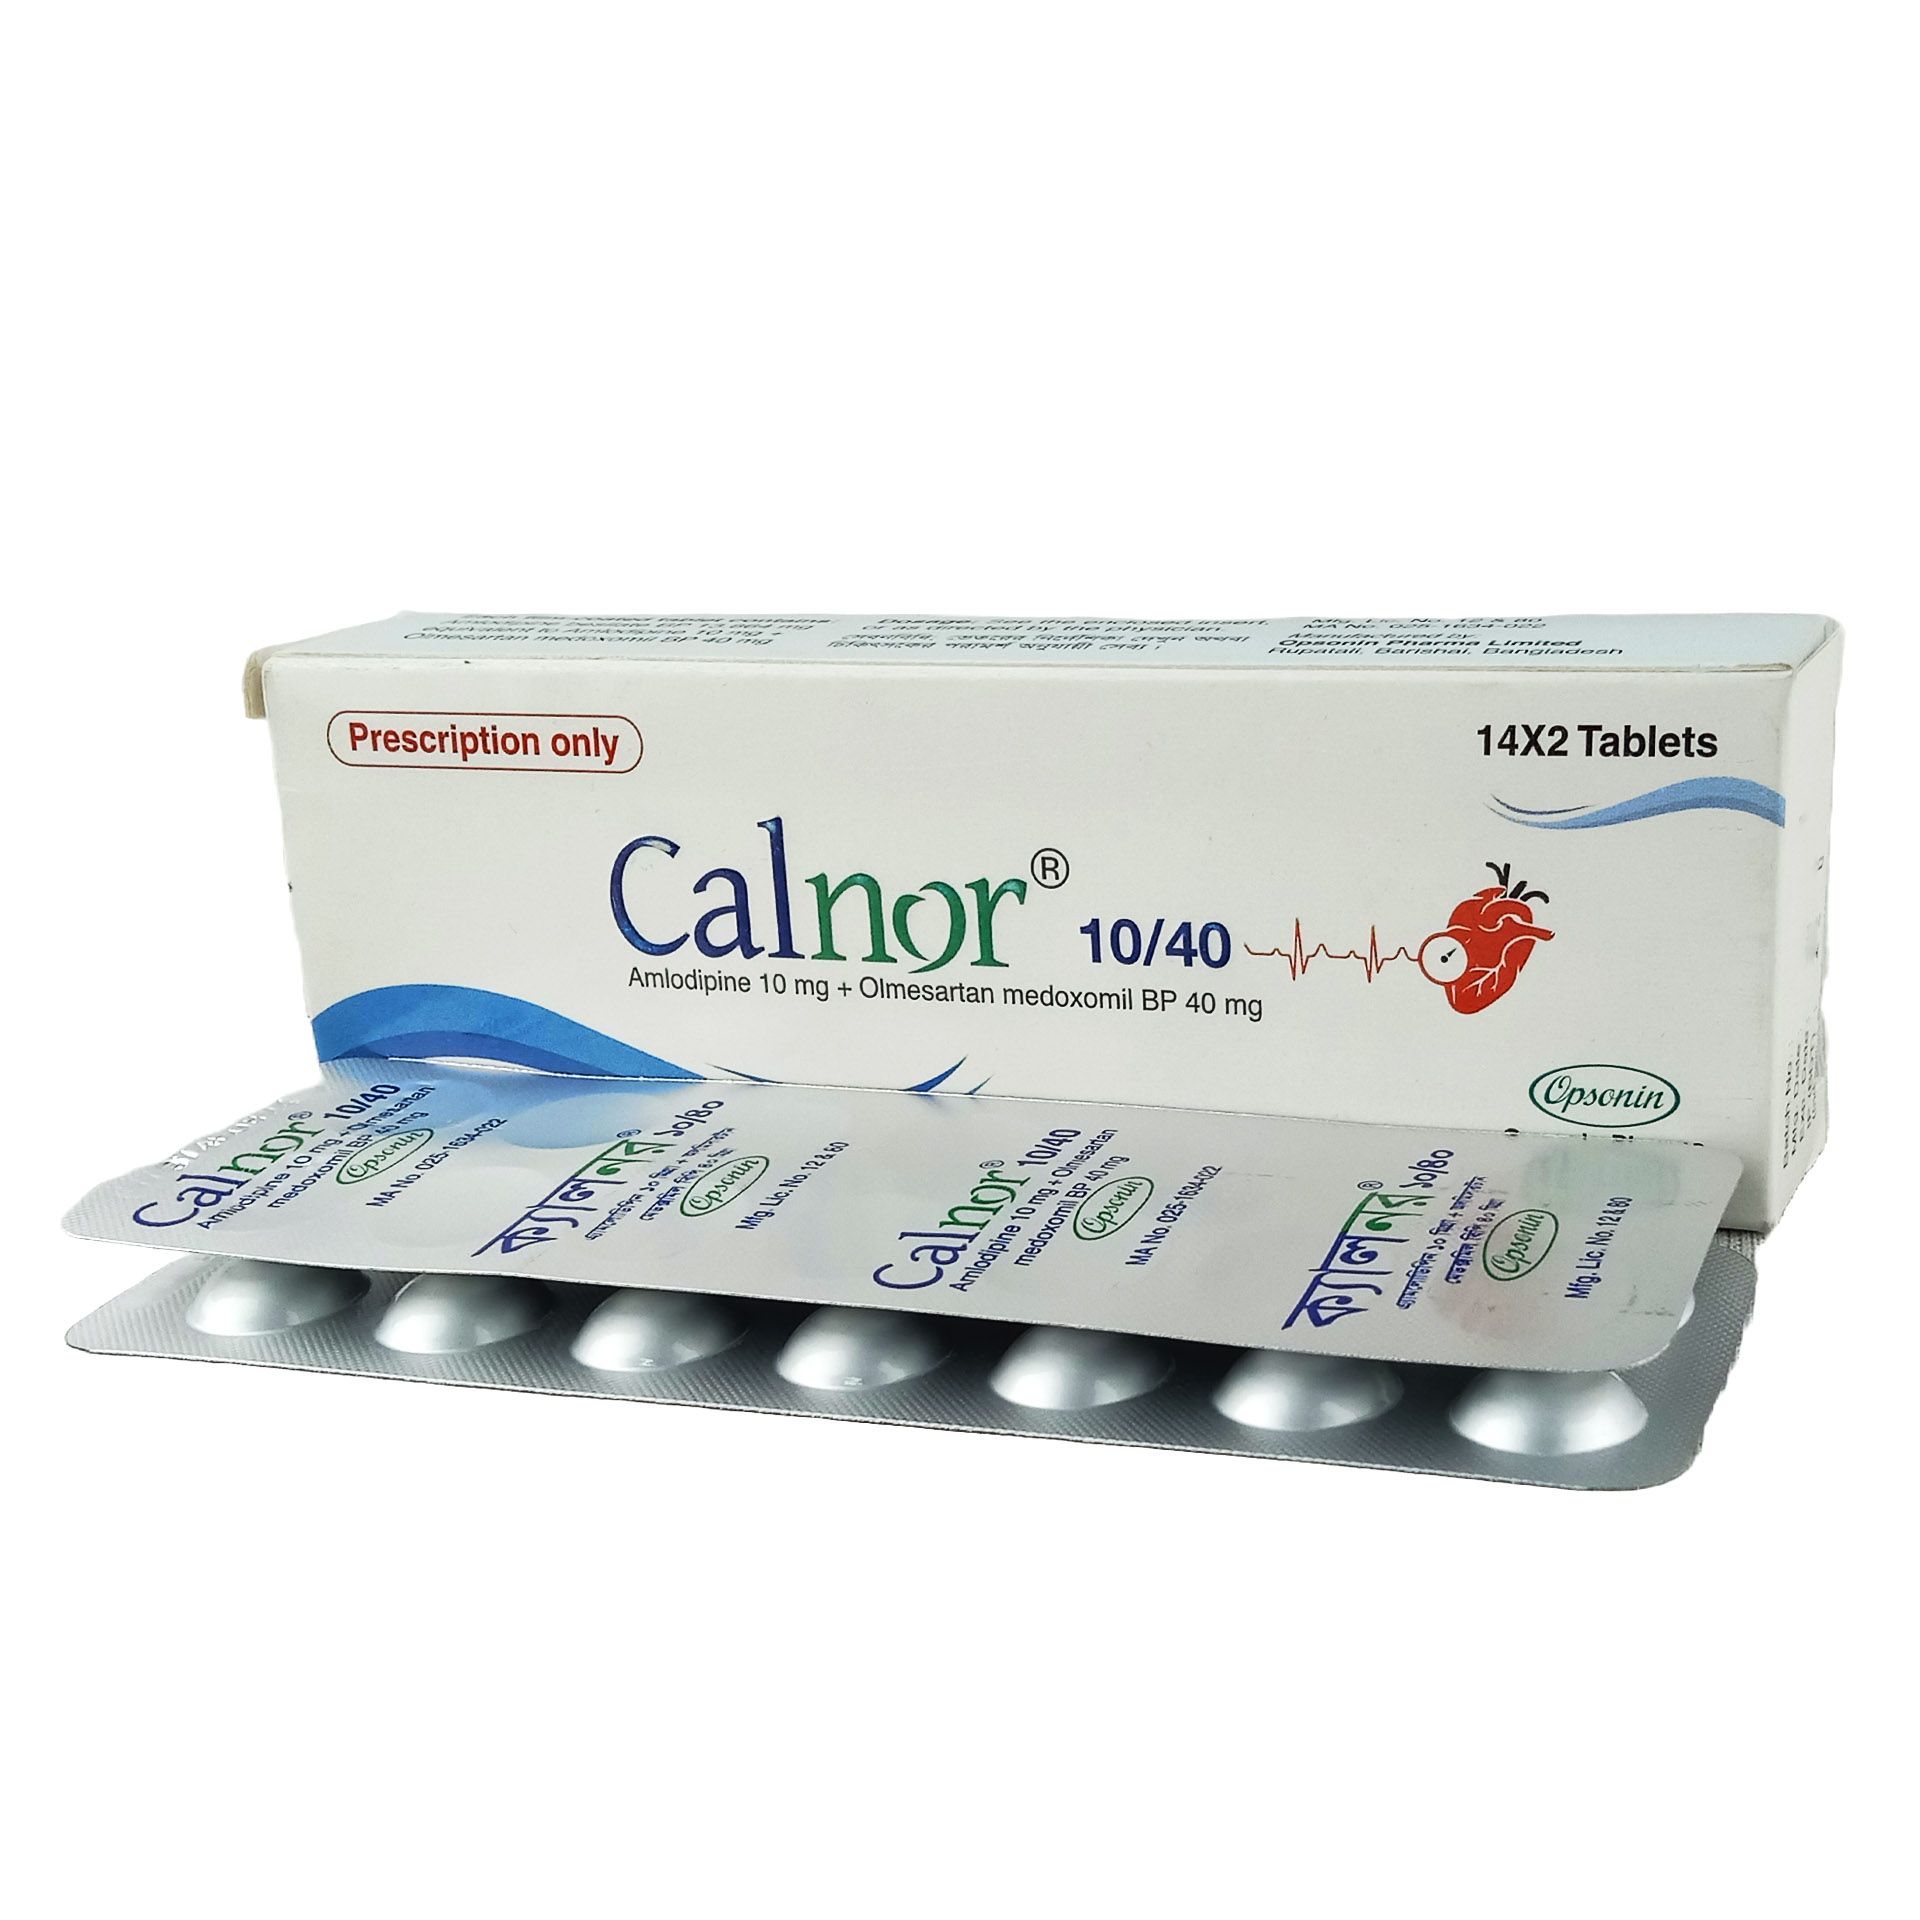 Calnor 10/40 10mg+40mg Tablet